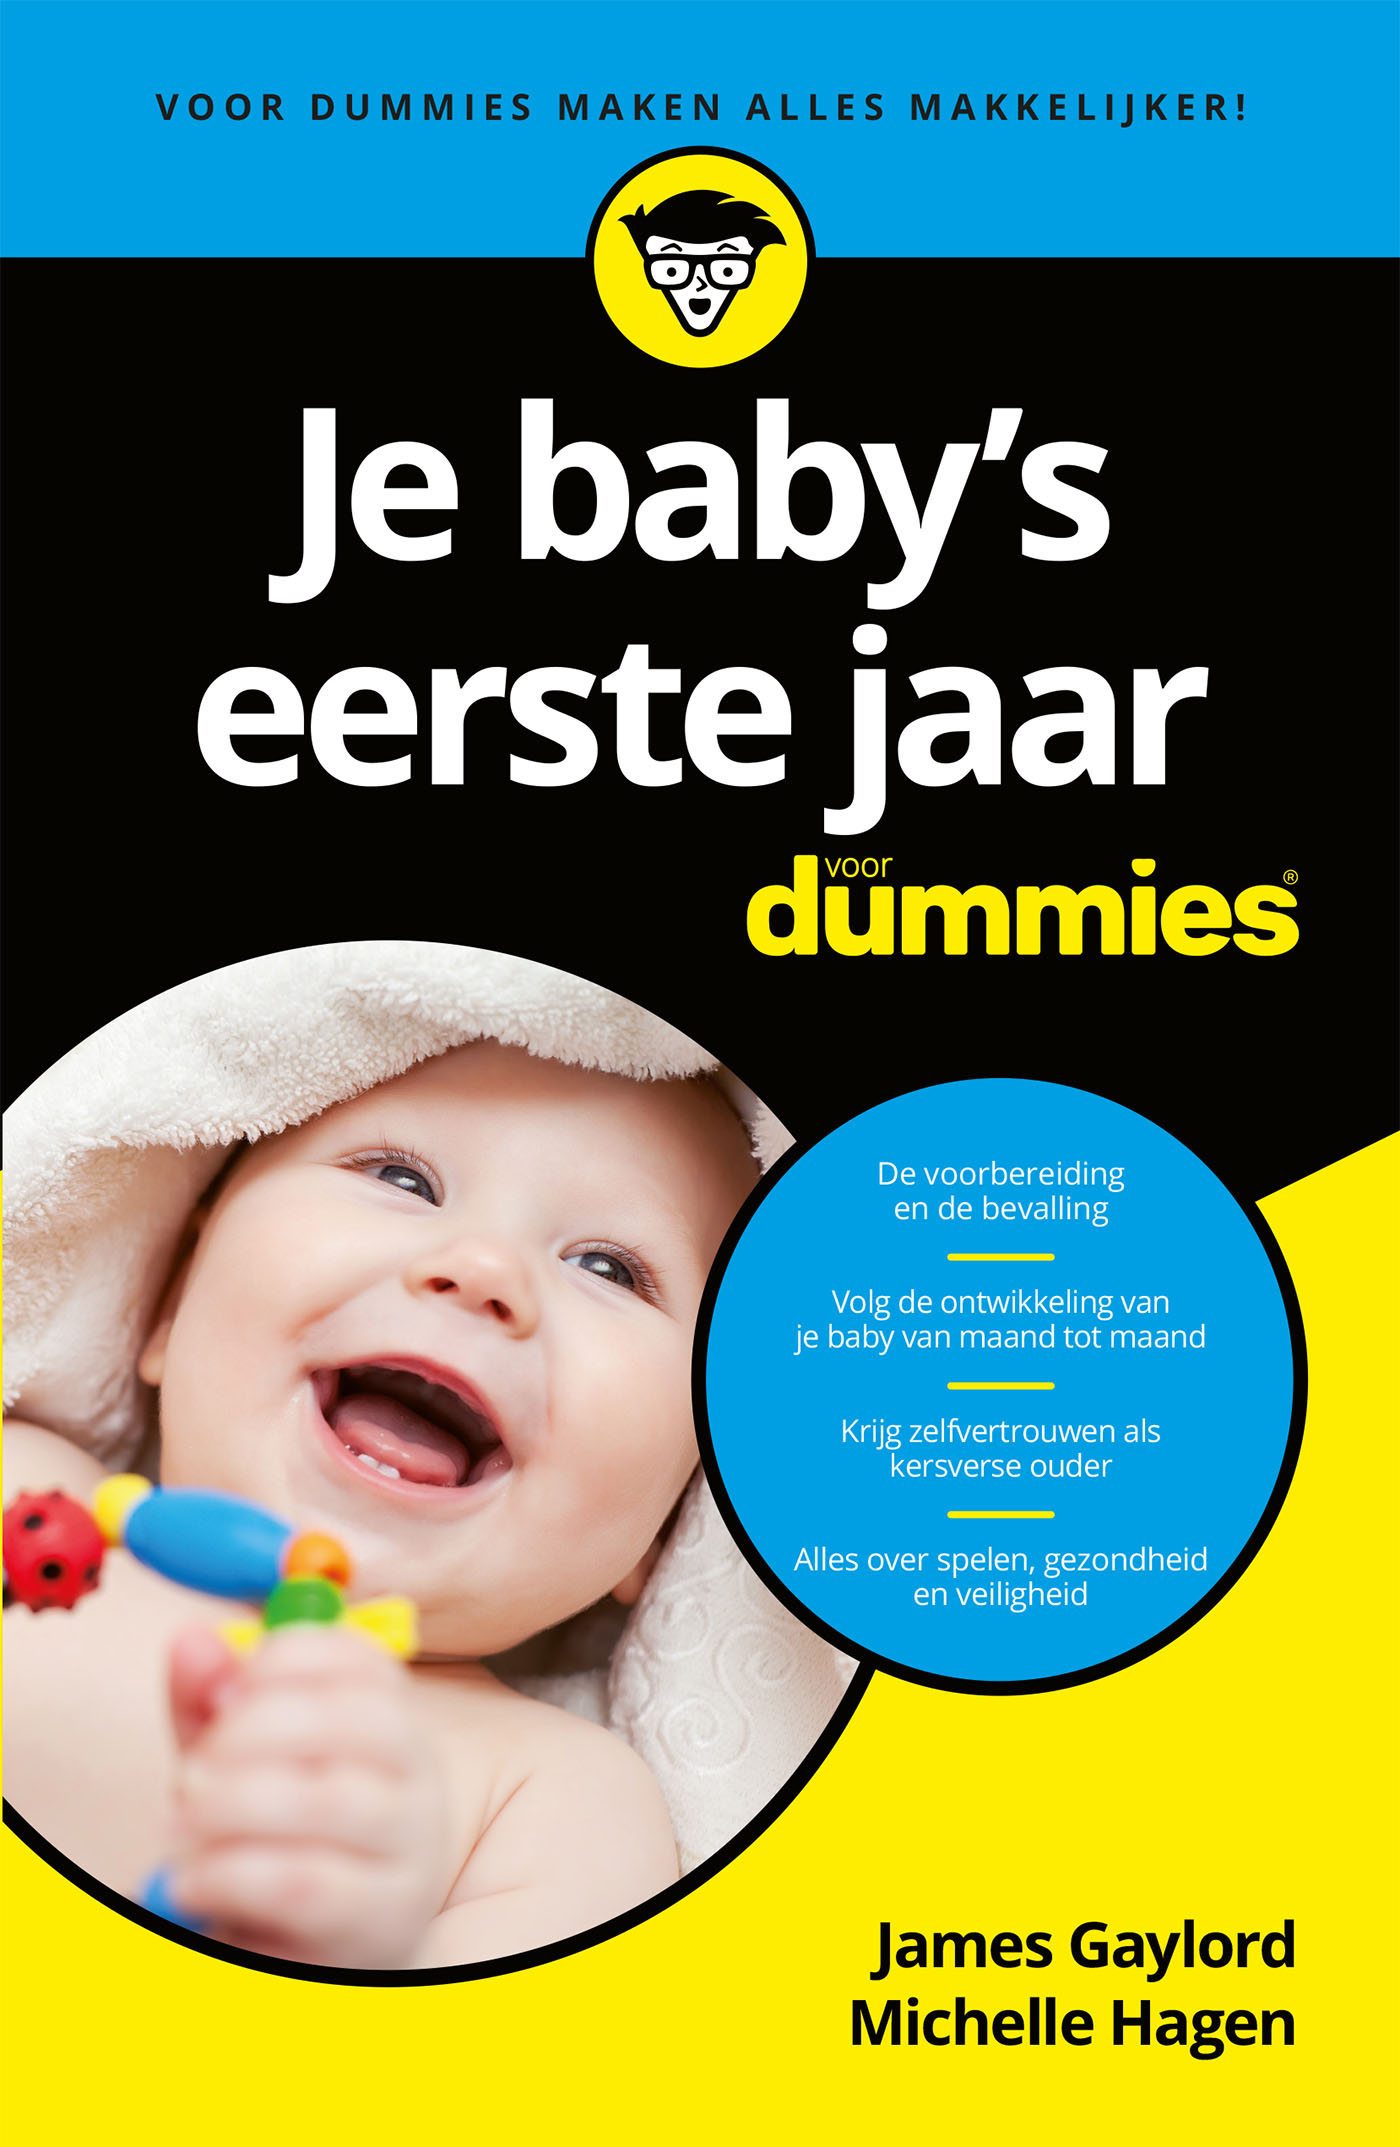 Je babys eerste jaar voor Dummies (Ebook)